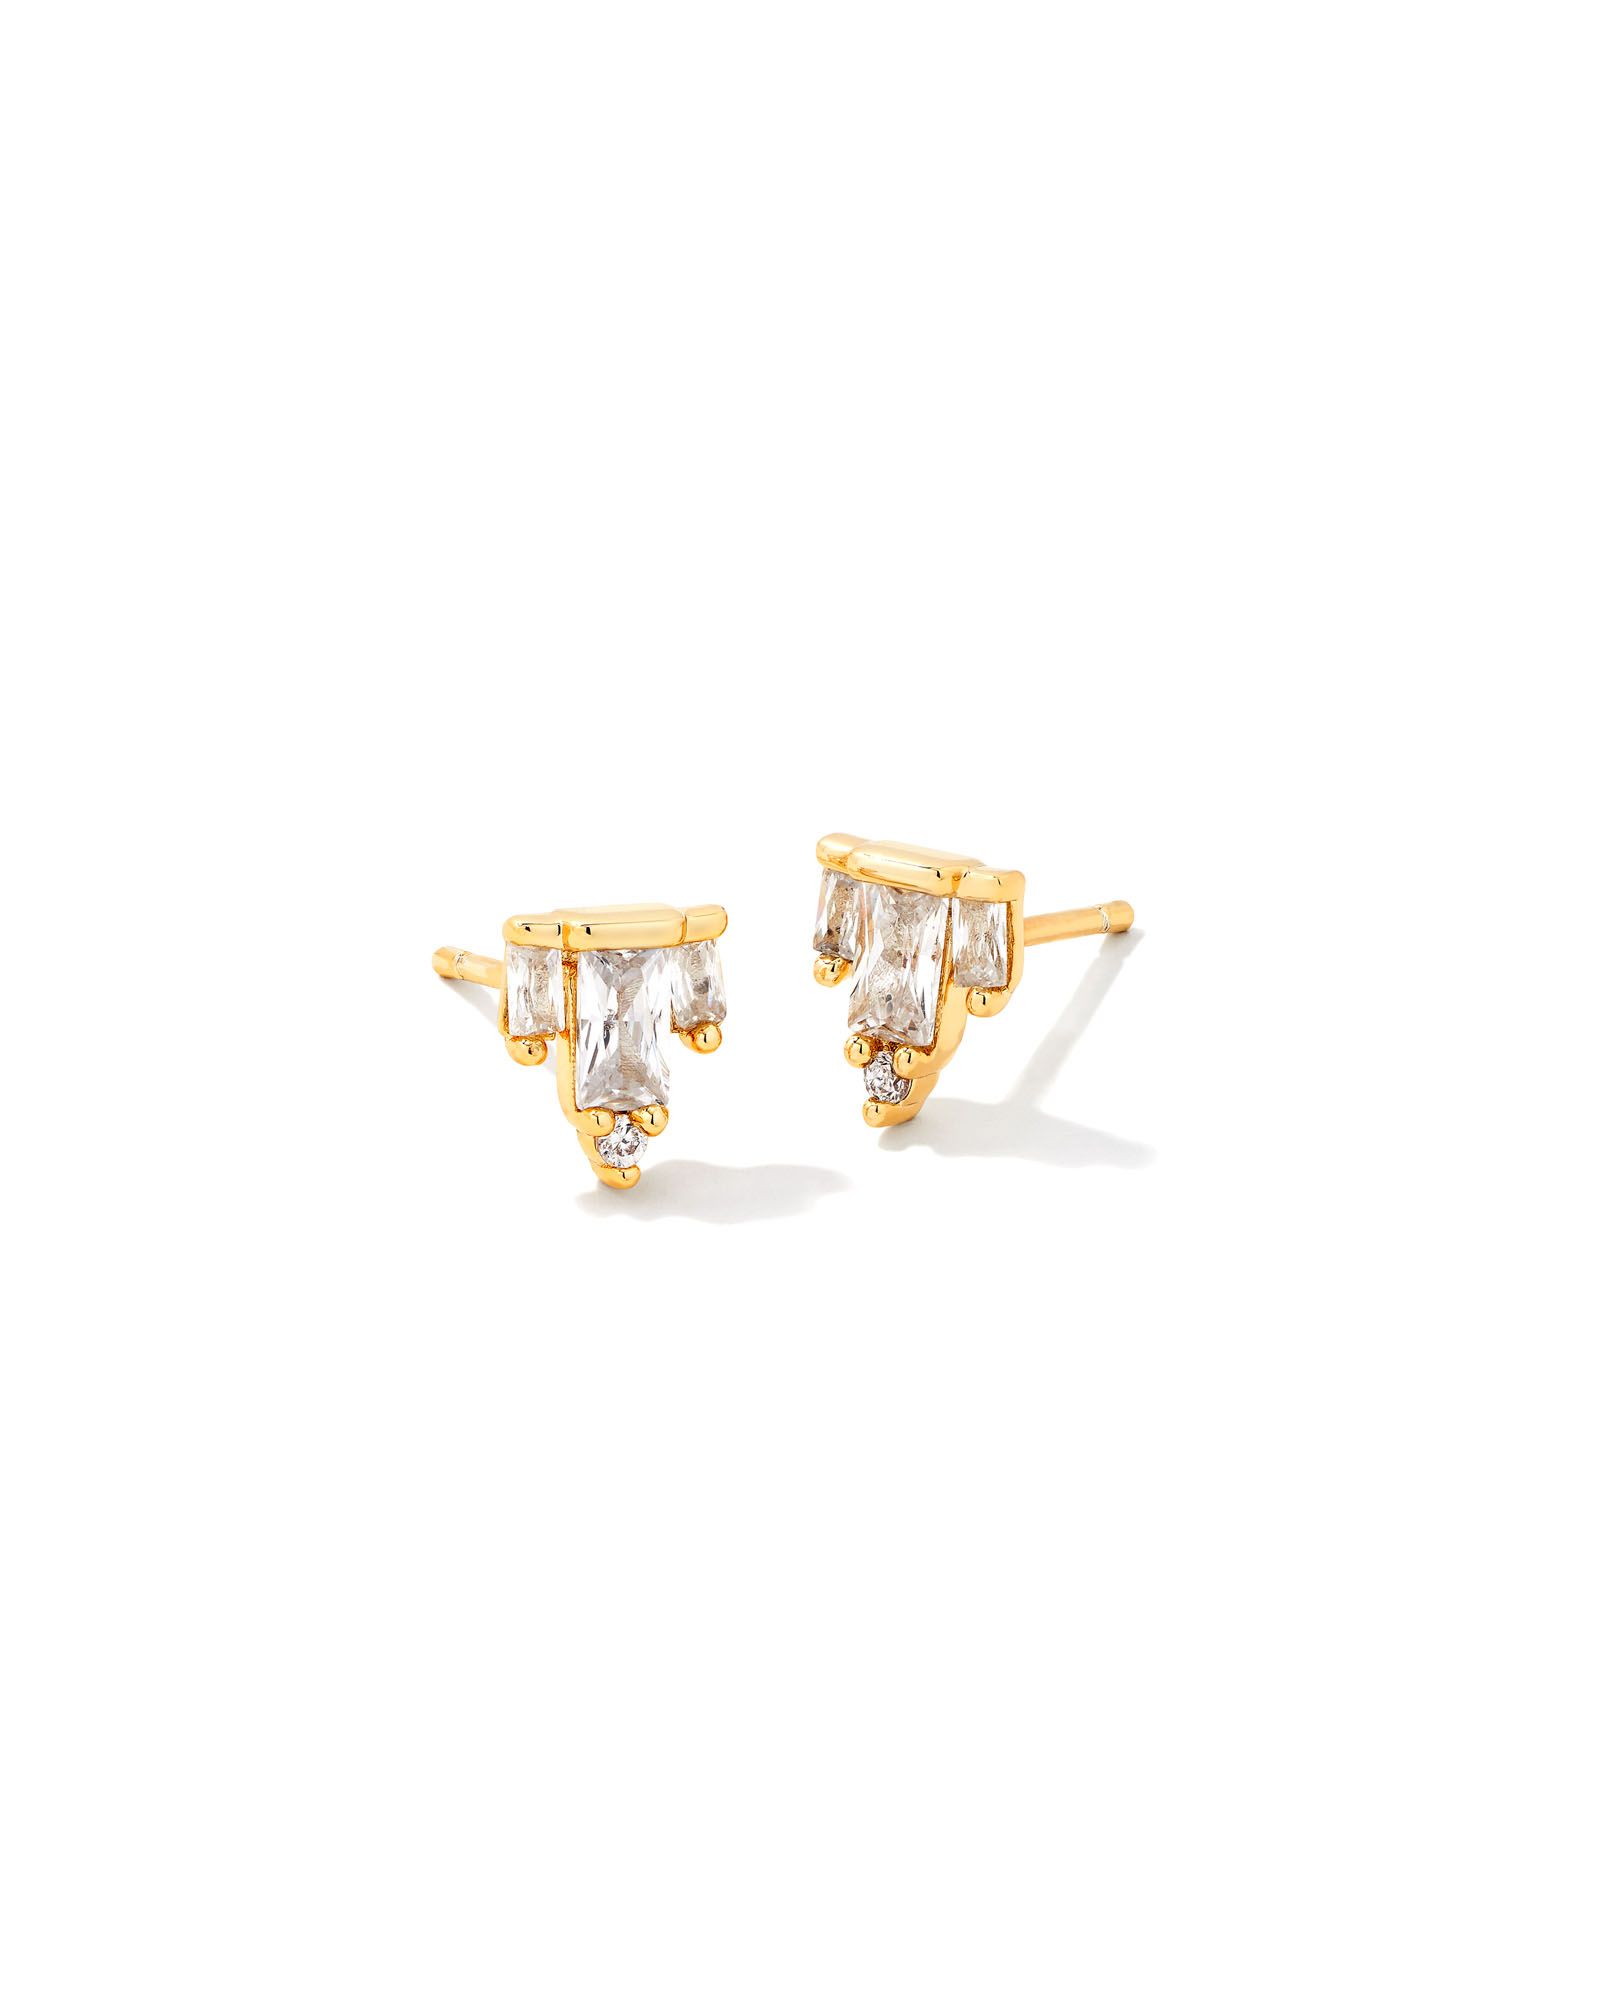 Juliette Gold Stud Earrings in White Crystal | Kendra Scott